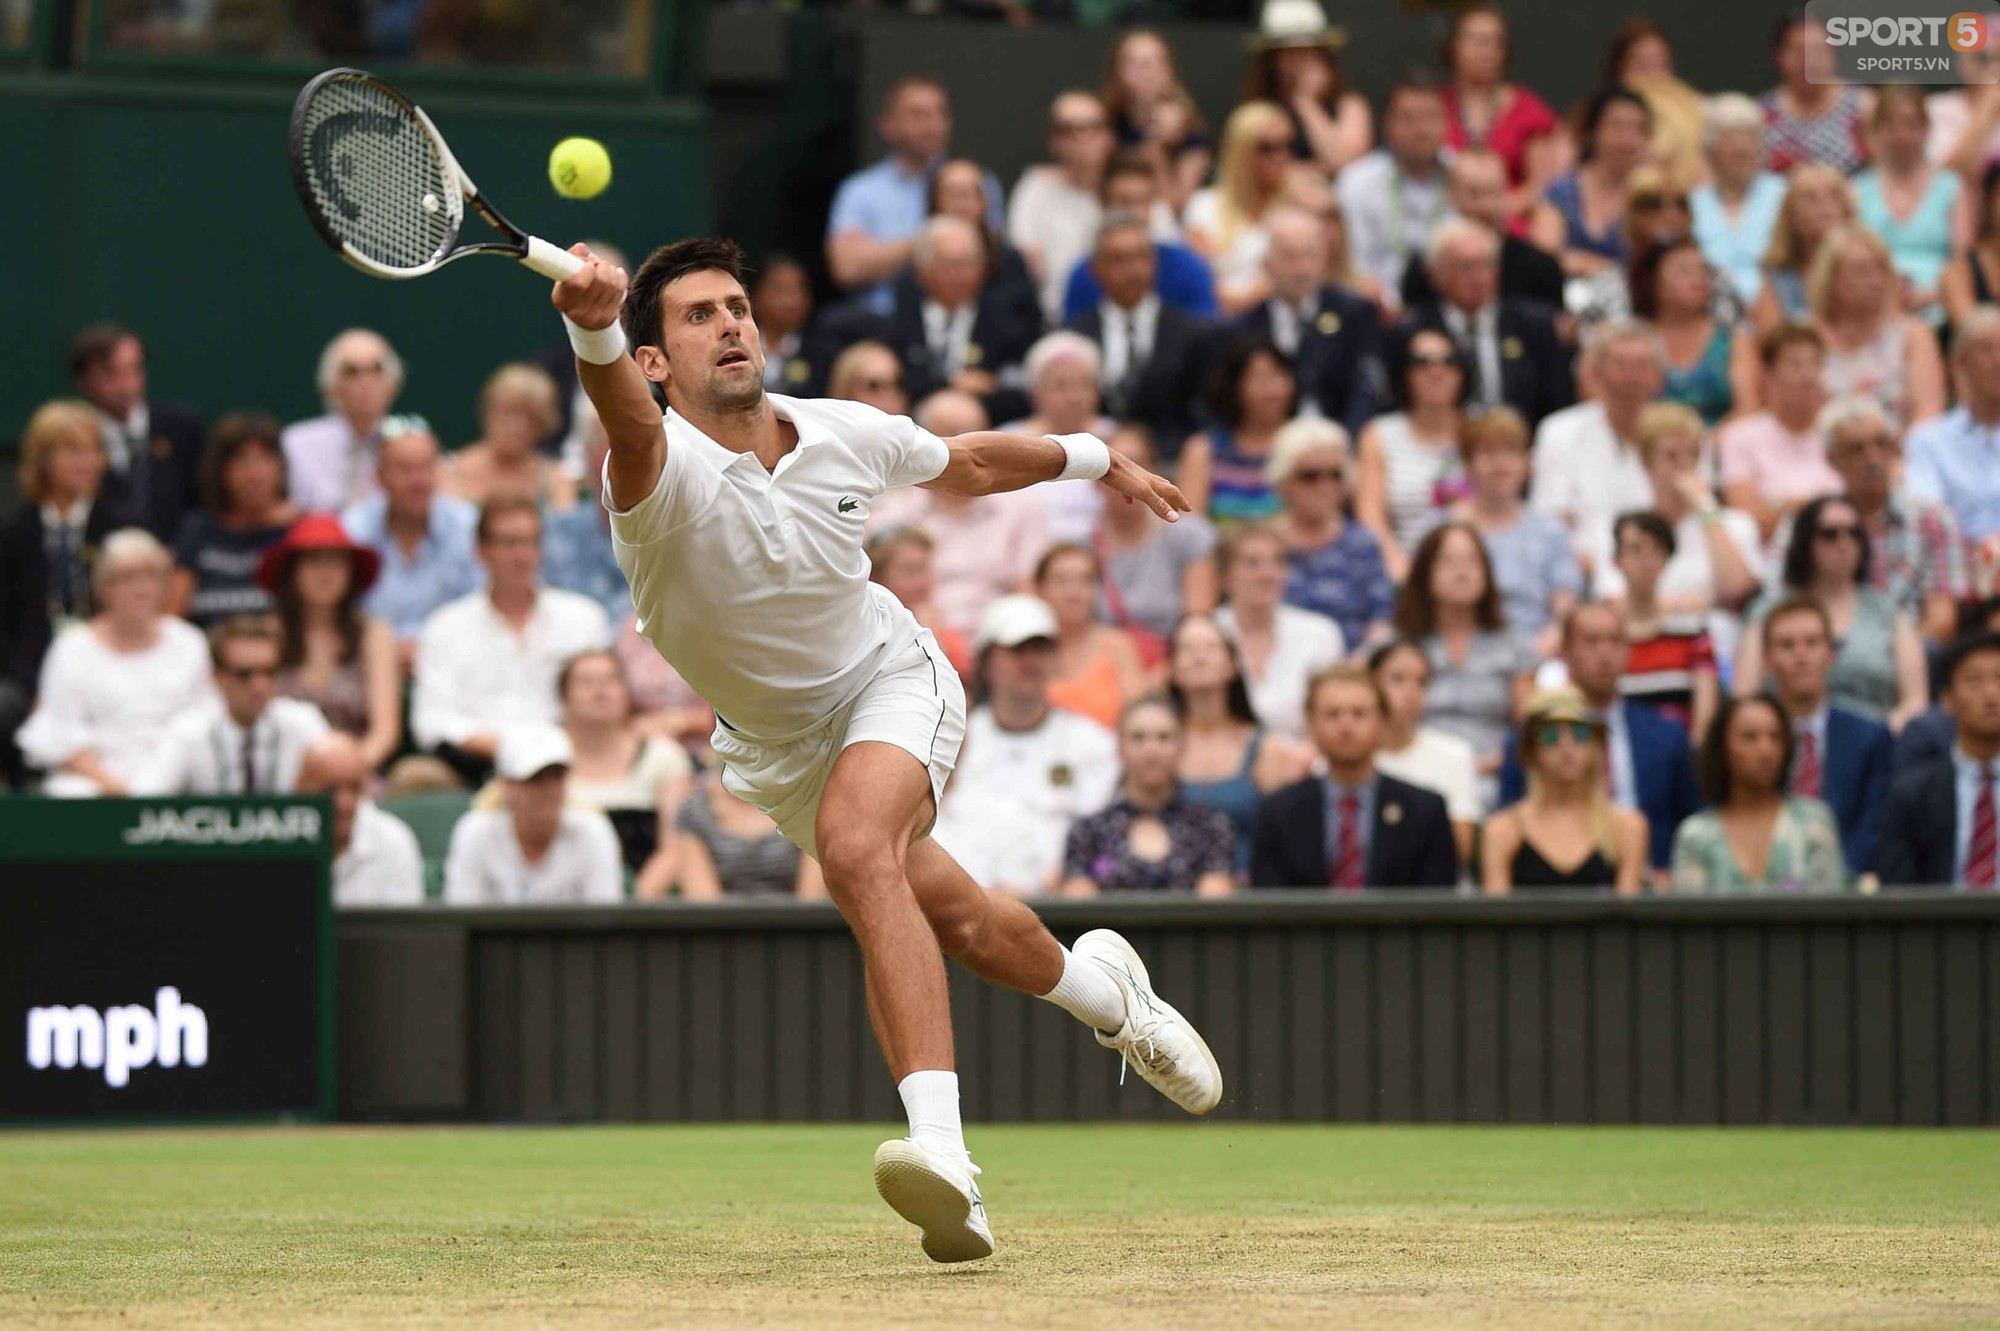 Quật ngã Nadal sau 5 set căng hơn dây đàn, Djokovic vào chung kết Wimbledon - Ảnh 7.